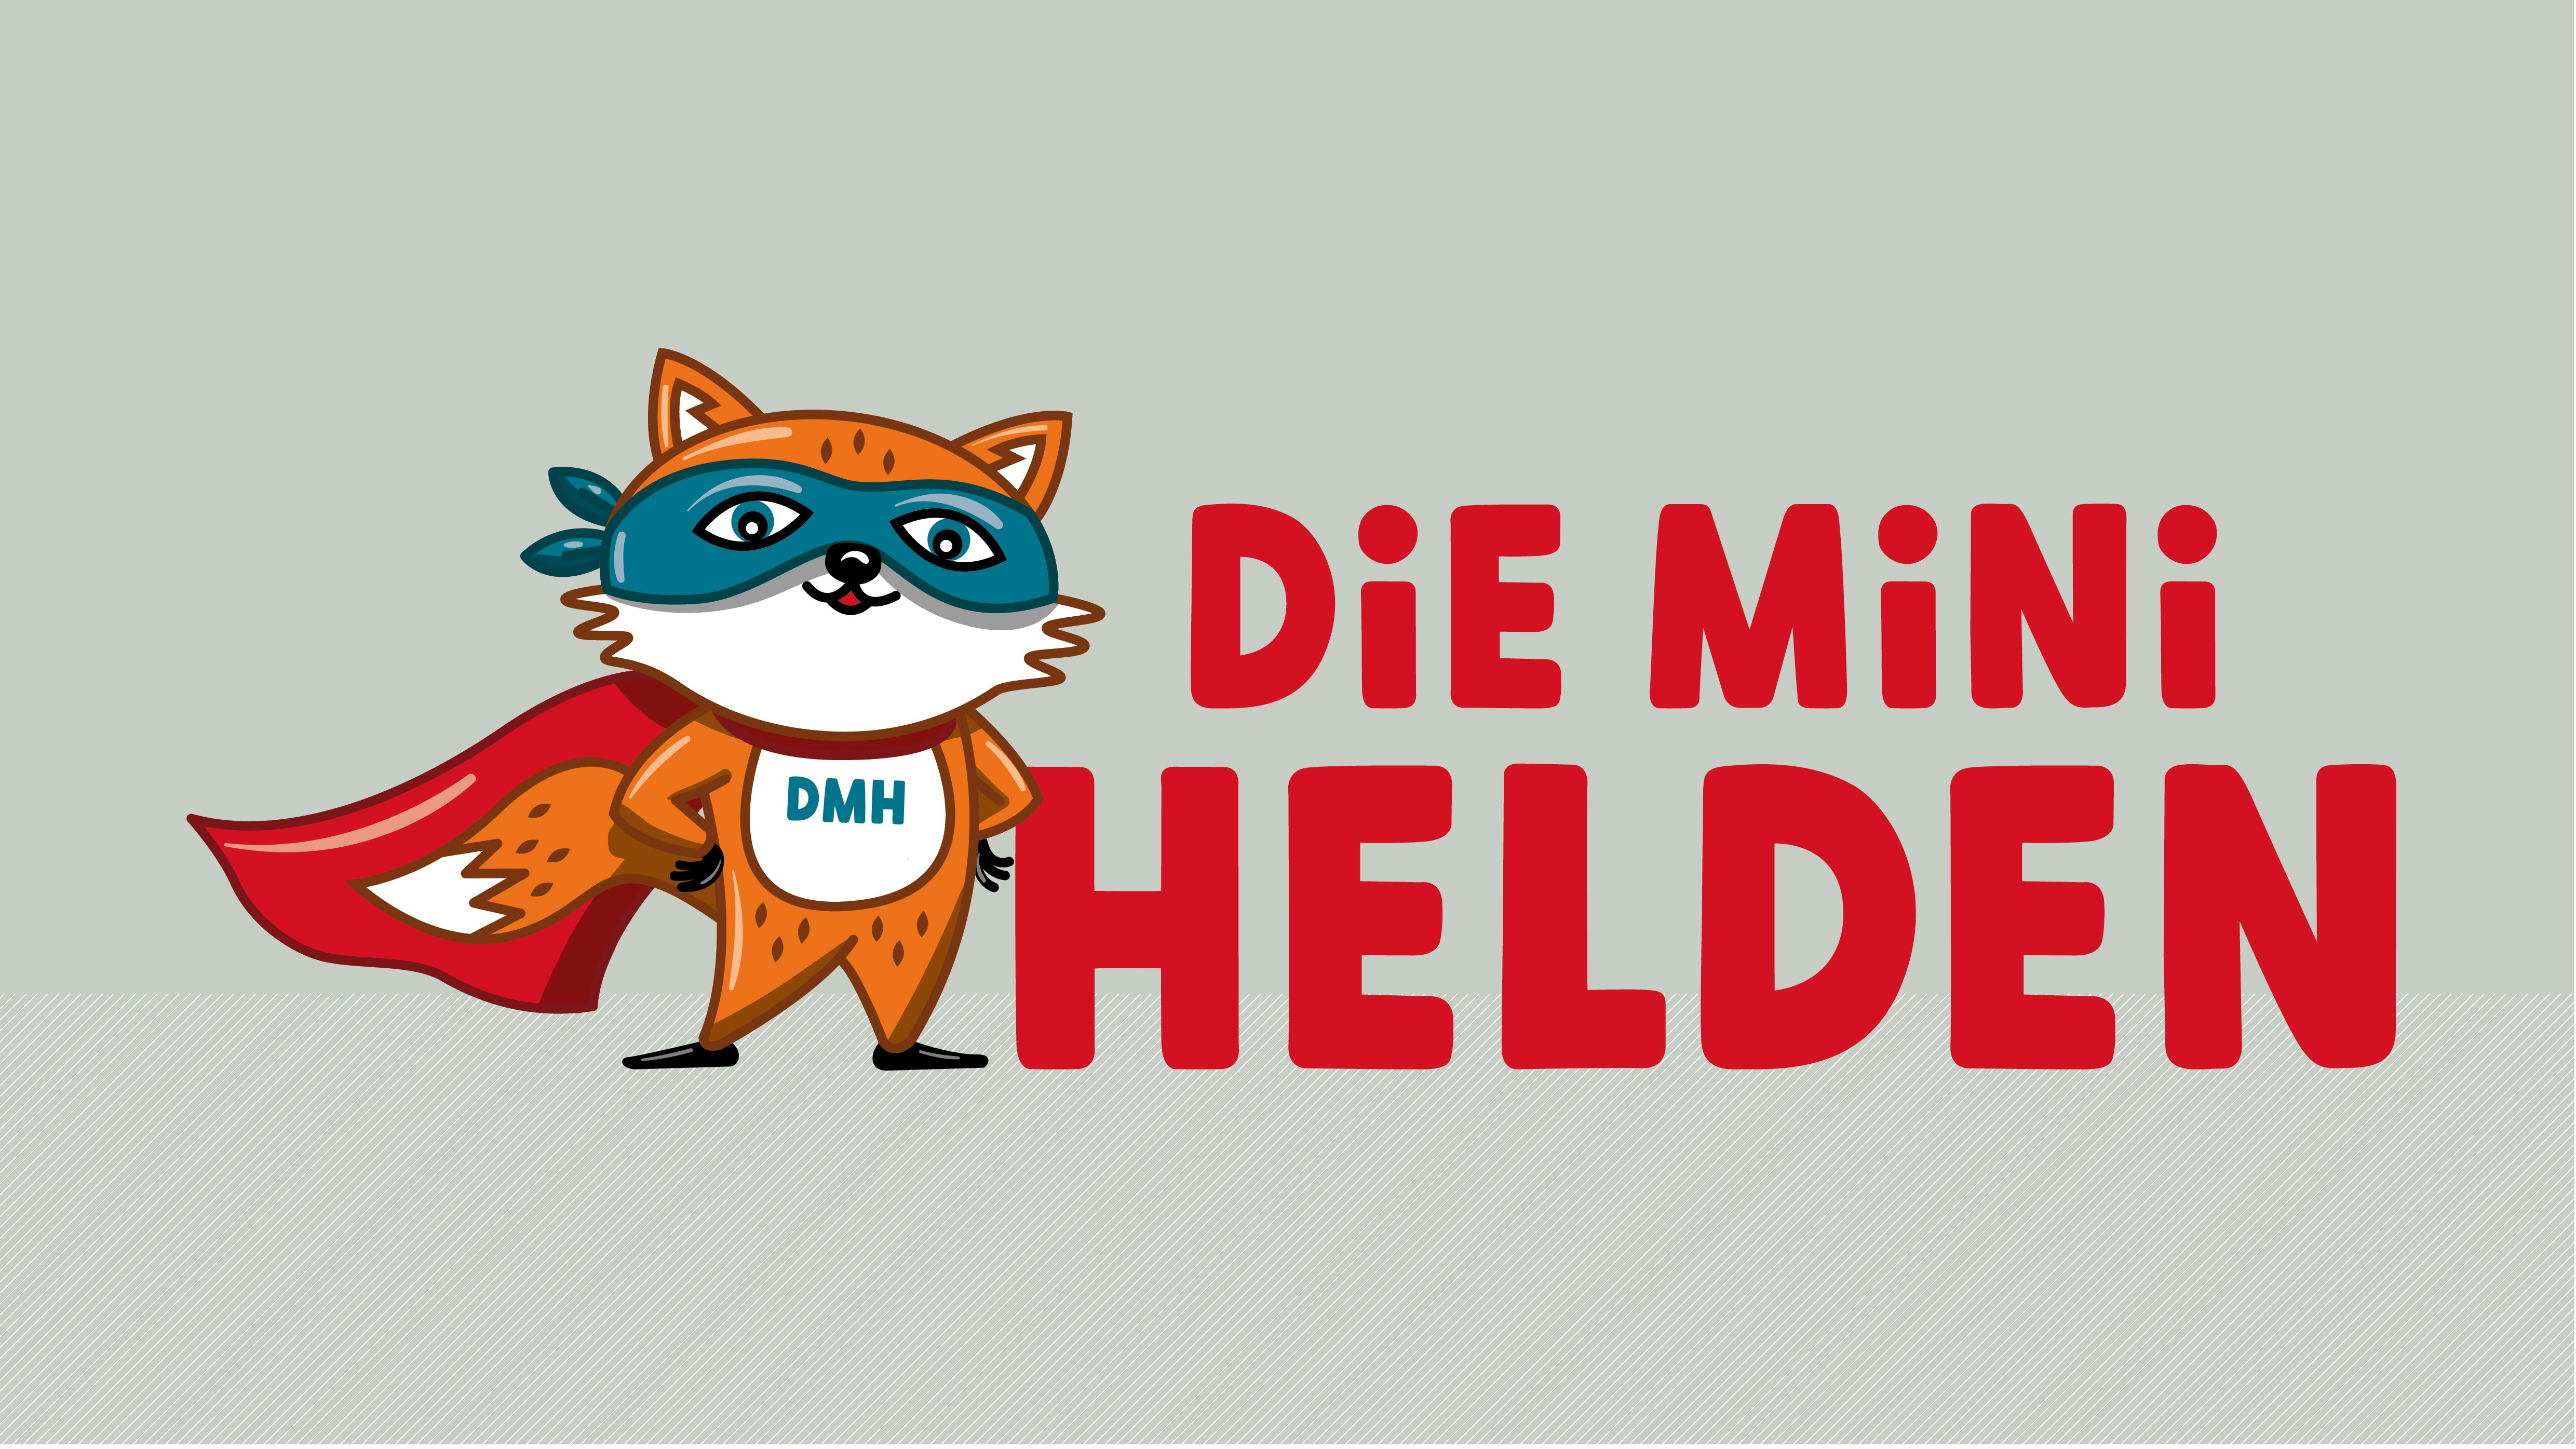 DMH Logo "Die Mini Helden"